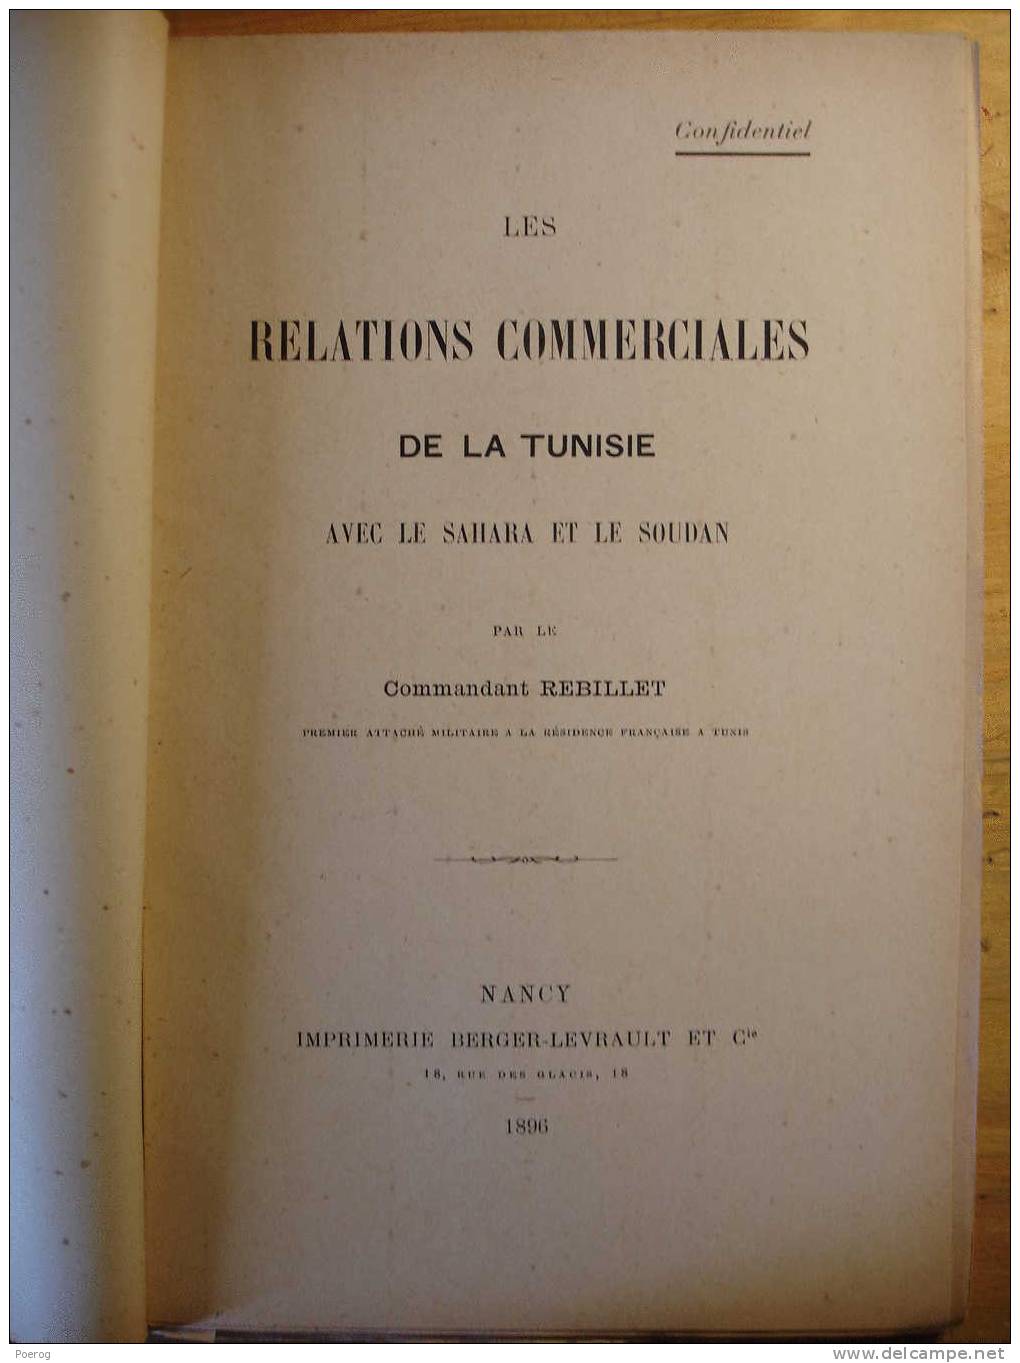 LES RELATIONS COMMERCIALES DE LA TUNISIE AVEC LE SAHARA ET LE SOUDAN - 1896 - Confidentiel - Par Le COMMANDANT REBILLET - 1801-1900